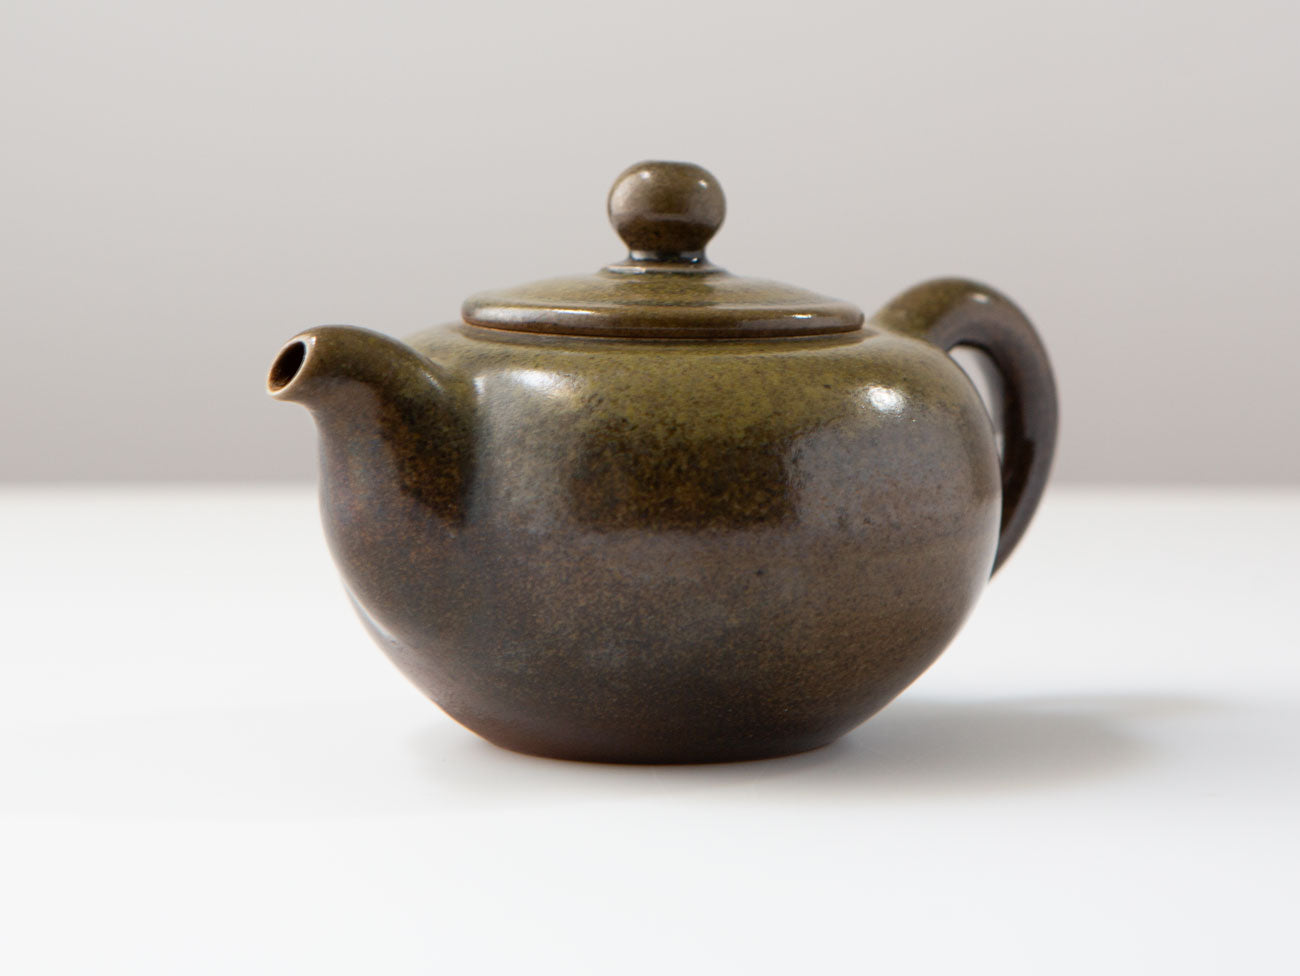 Wood-fired teapot, Botera, Liao Guo Hua